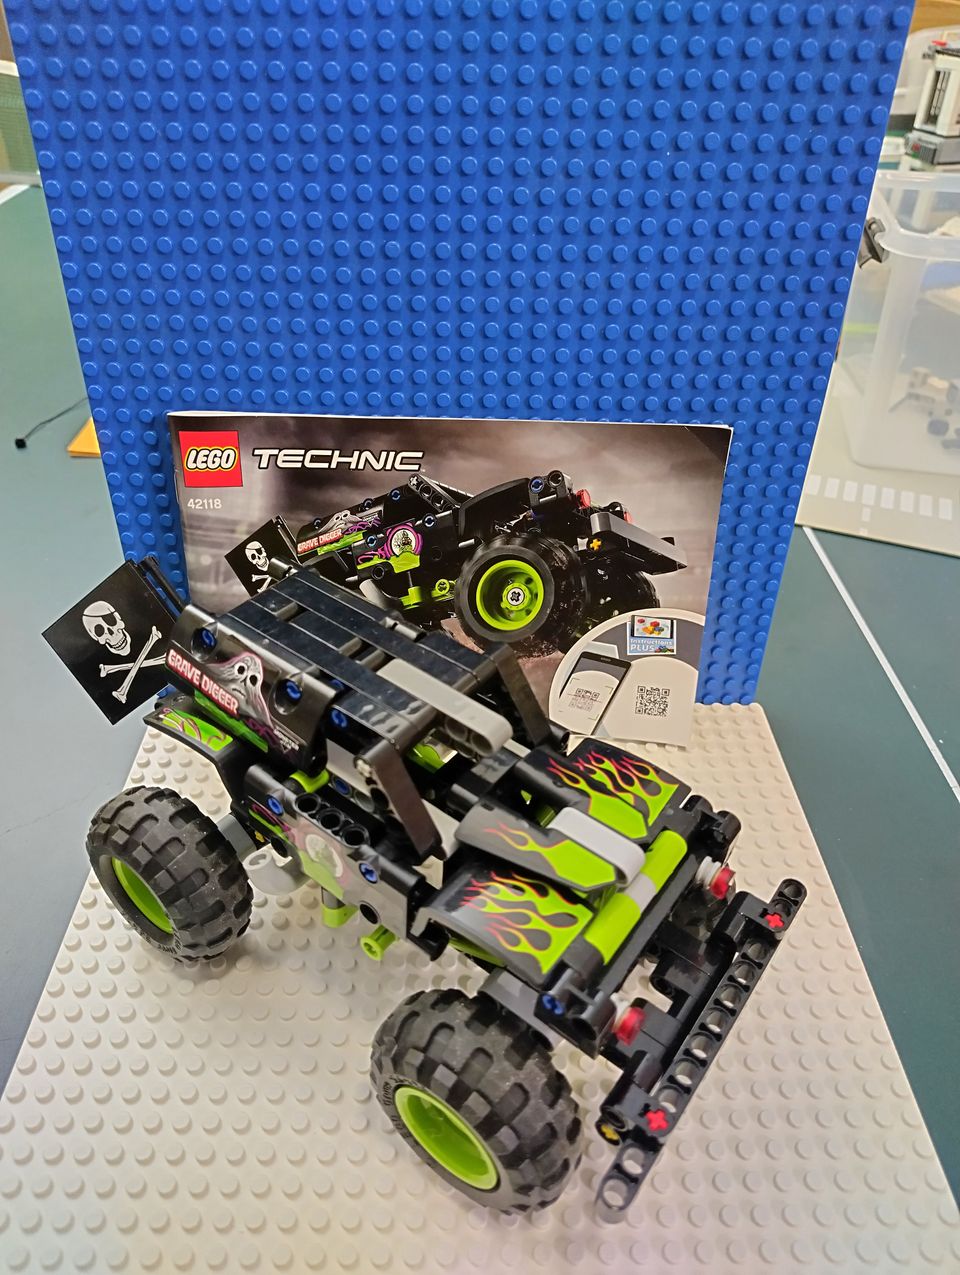 Lego 42118, Technic - Monster Jam Grave Digger